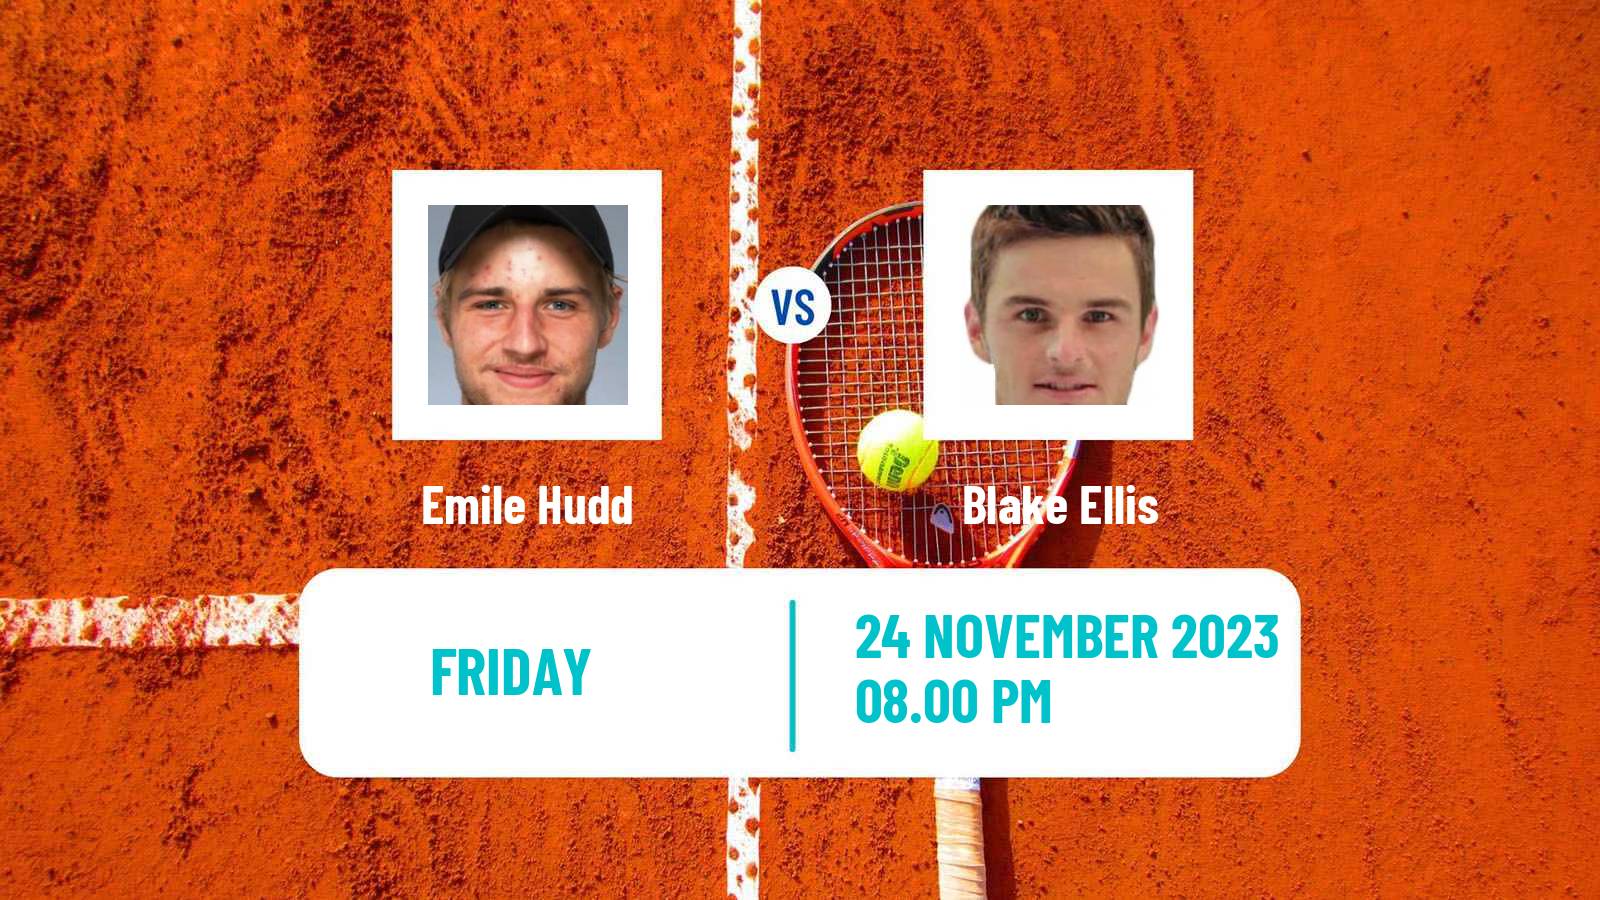 Tennis ITF M25 Brisbane Men Emile Hudd - Blake Ellis